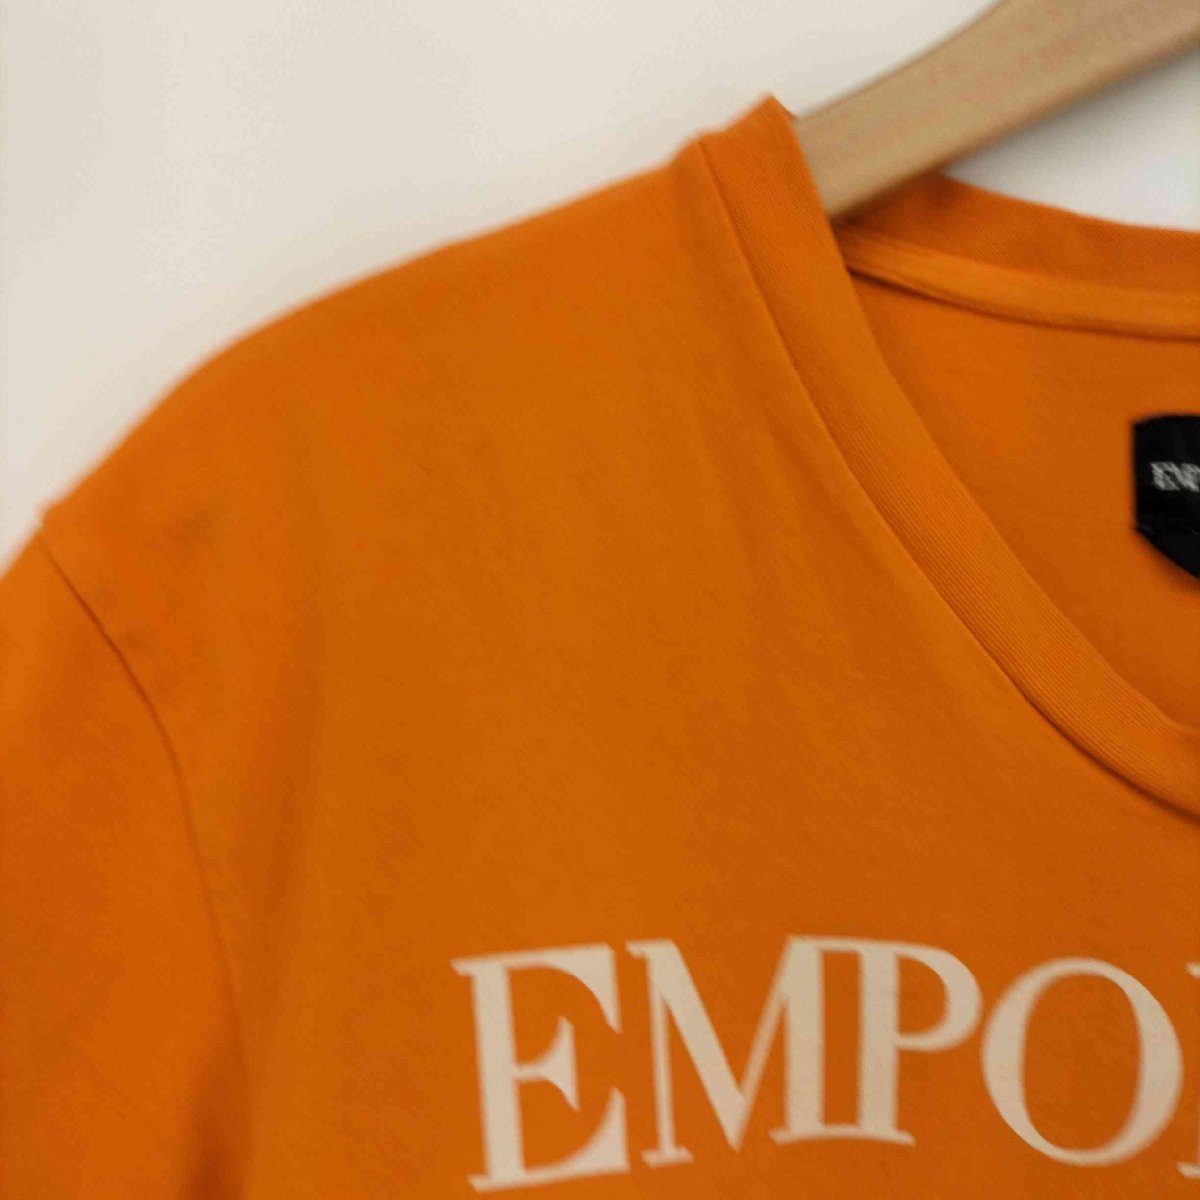 EMPORIO ARMANI(エンポリオアルマーニ) ロゴプリント 半袖 S/S Tシャツ メンズ im 中古 古着 0824_画像3